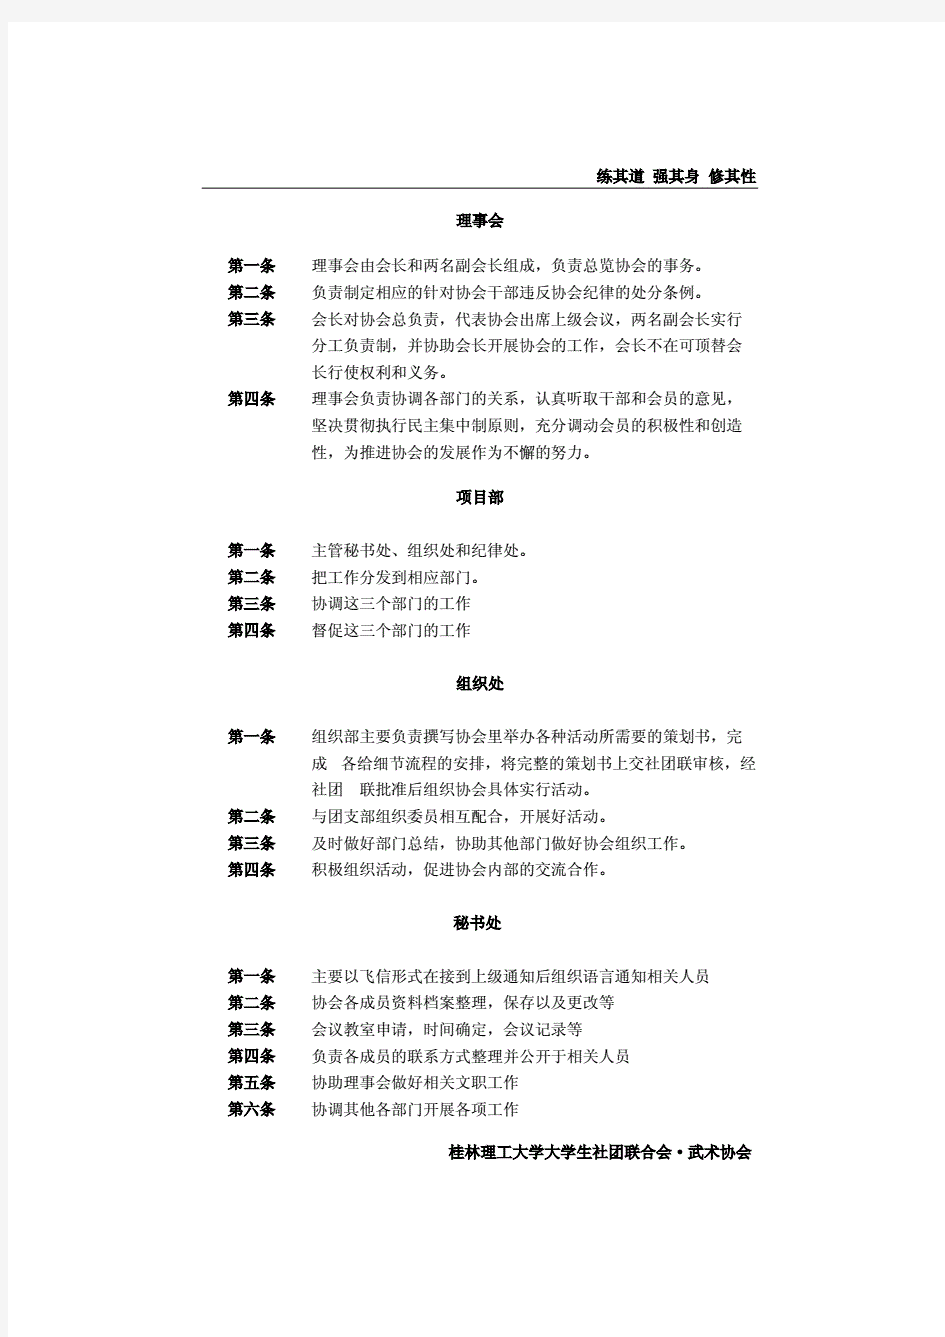 桂林理工大学武术协会章程